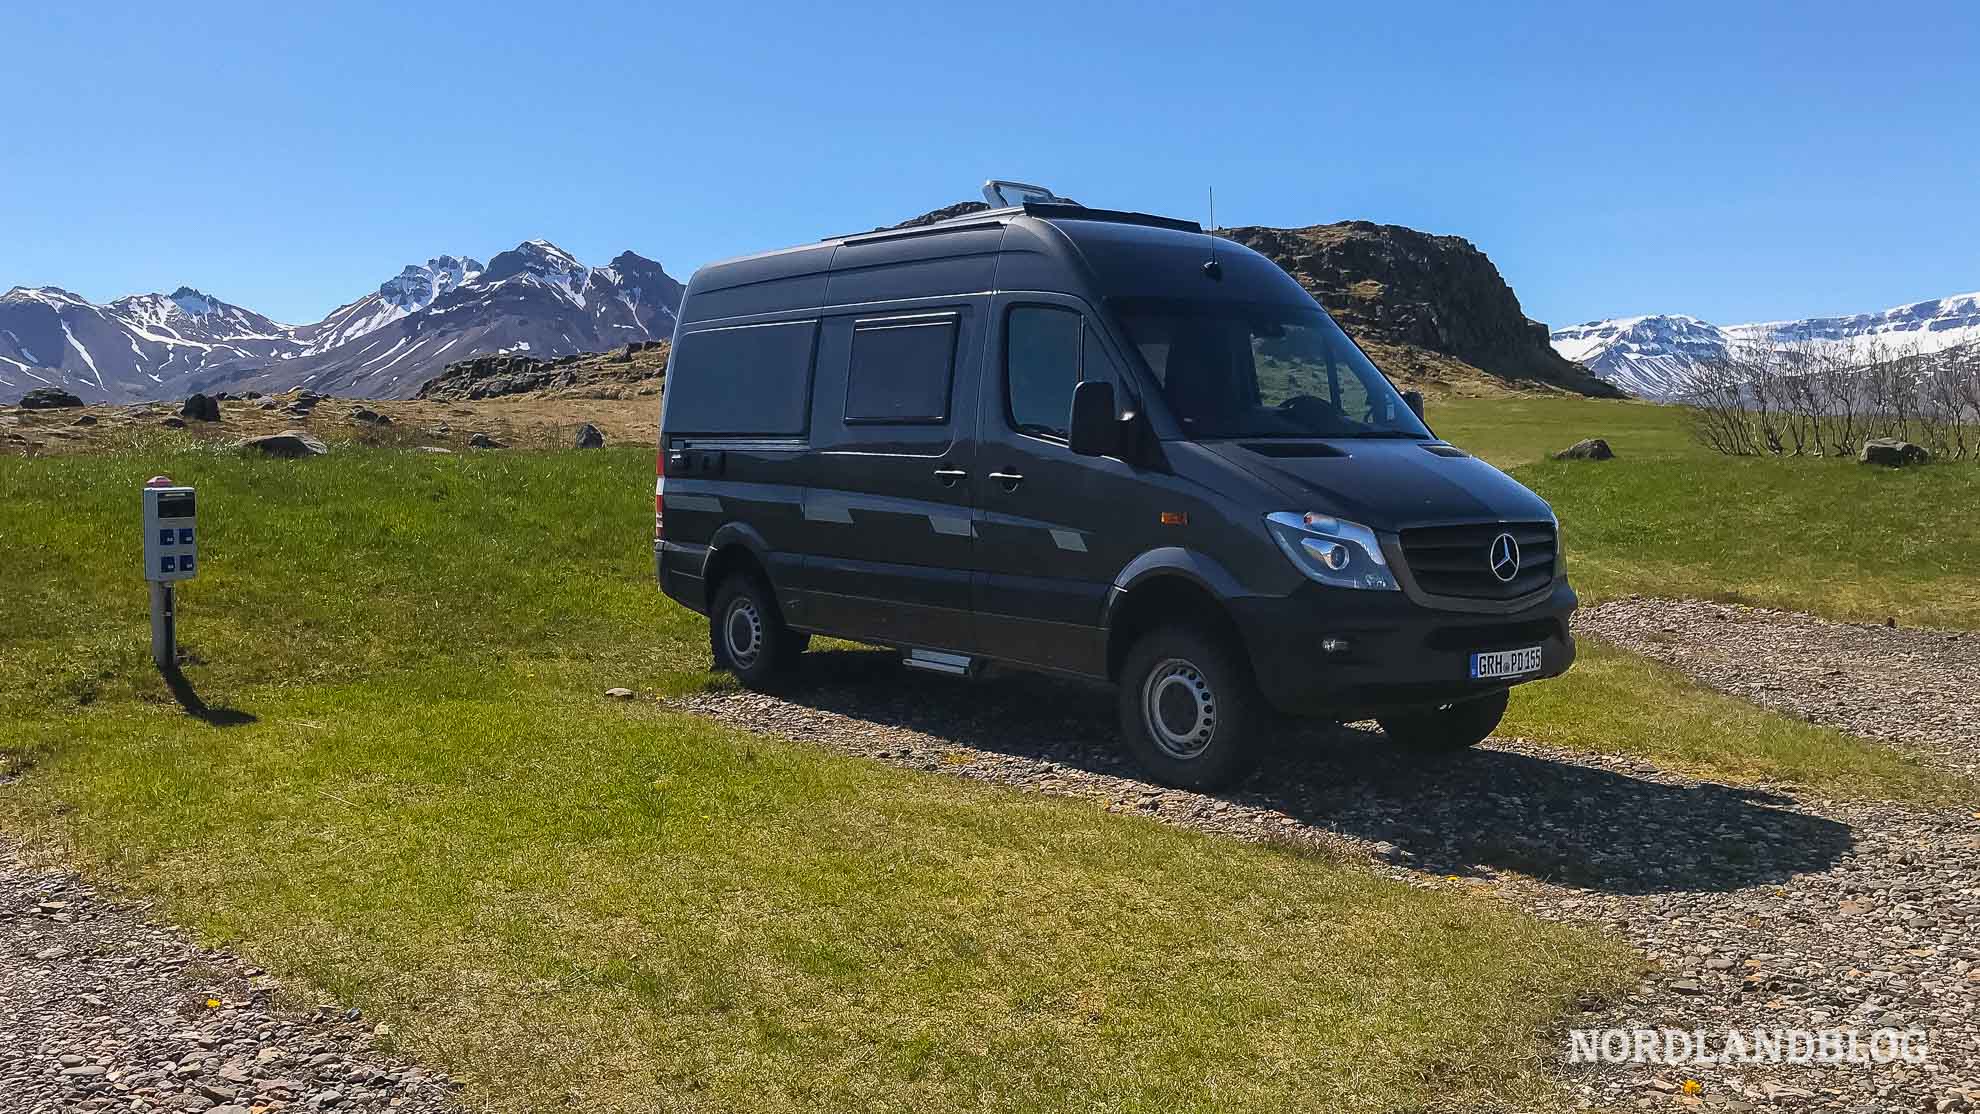 Unser Kastenwagen auf dem Campingplatz und Stellplatz für Wohnmobil in Borgarfjörður in Island (Nordlandblog)